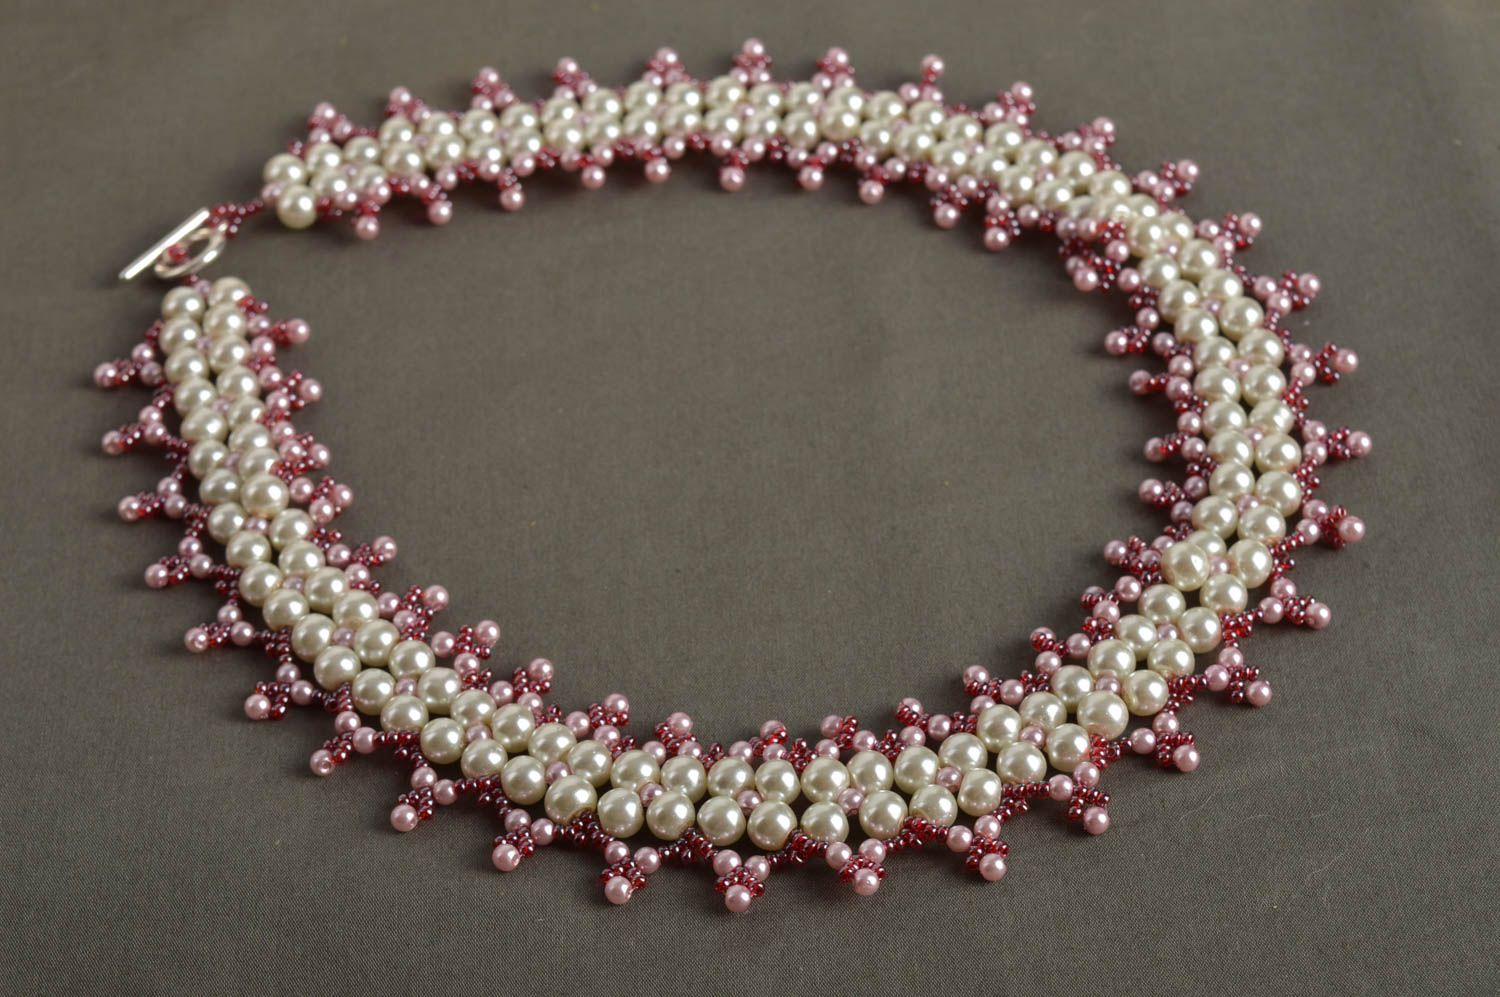 Handmade beaded necklace unusual elegant evening necklace stylish jewelry photo 1